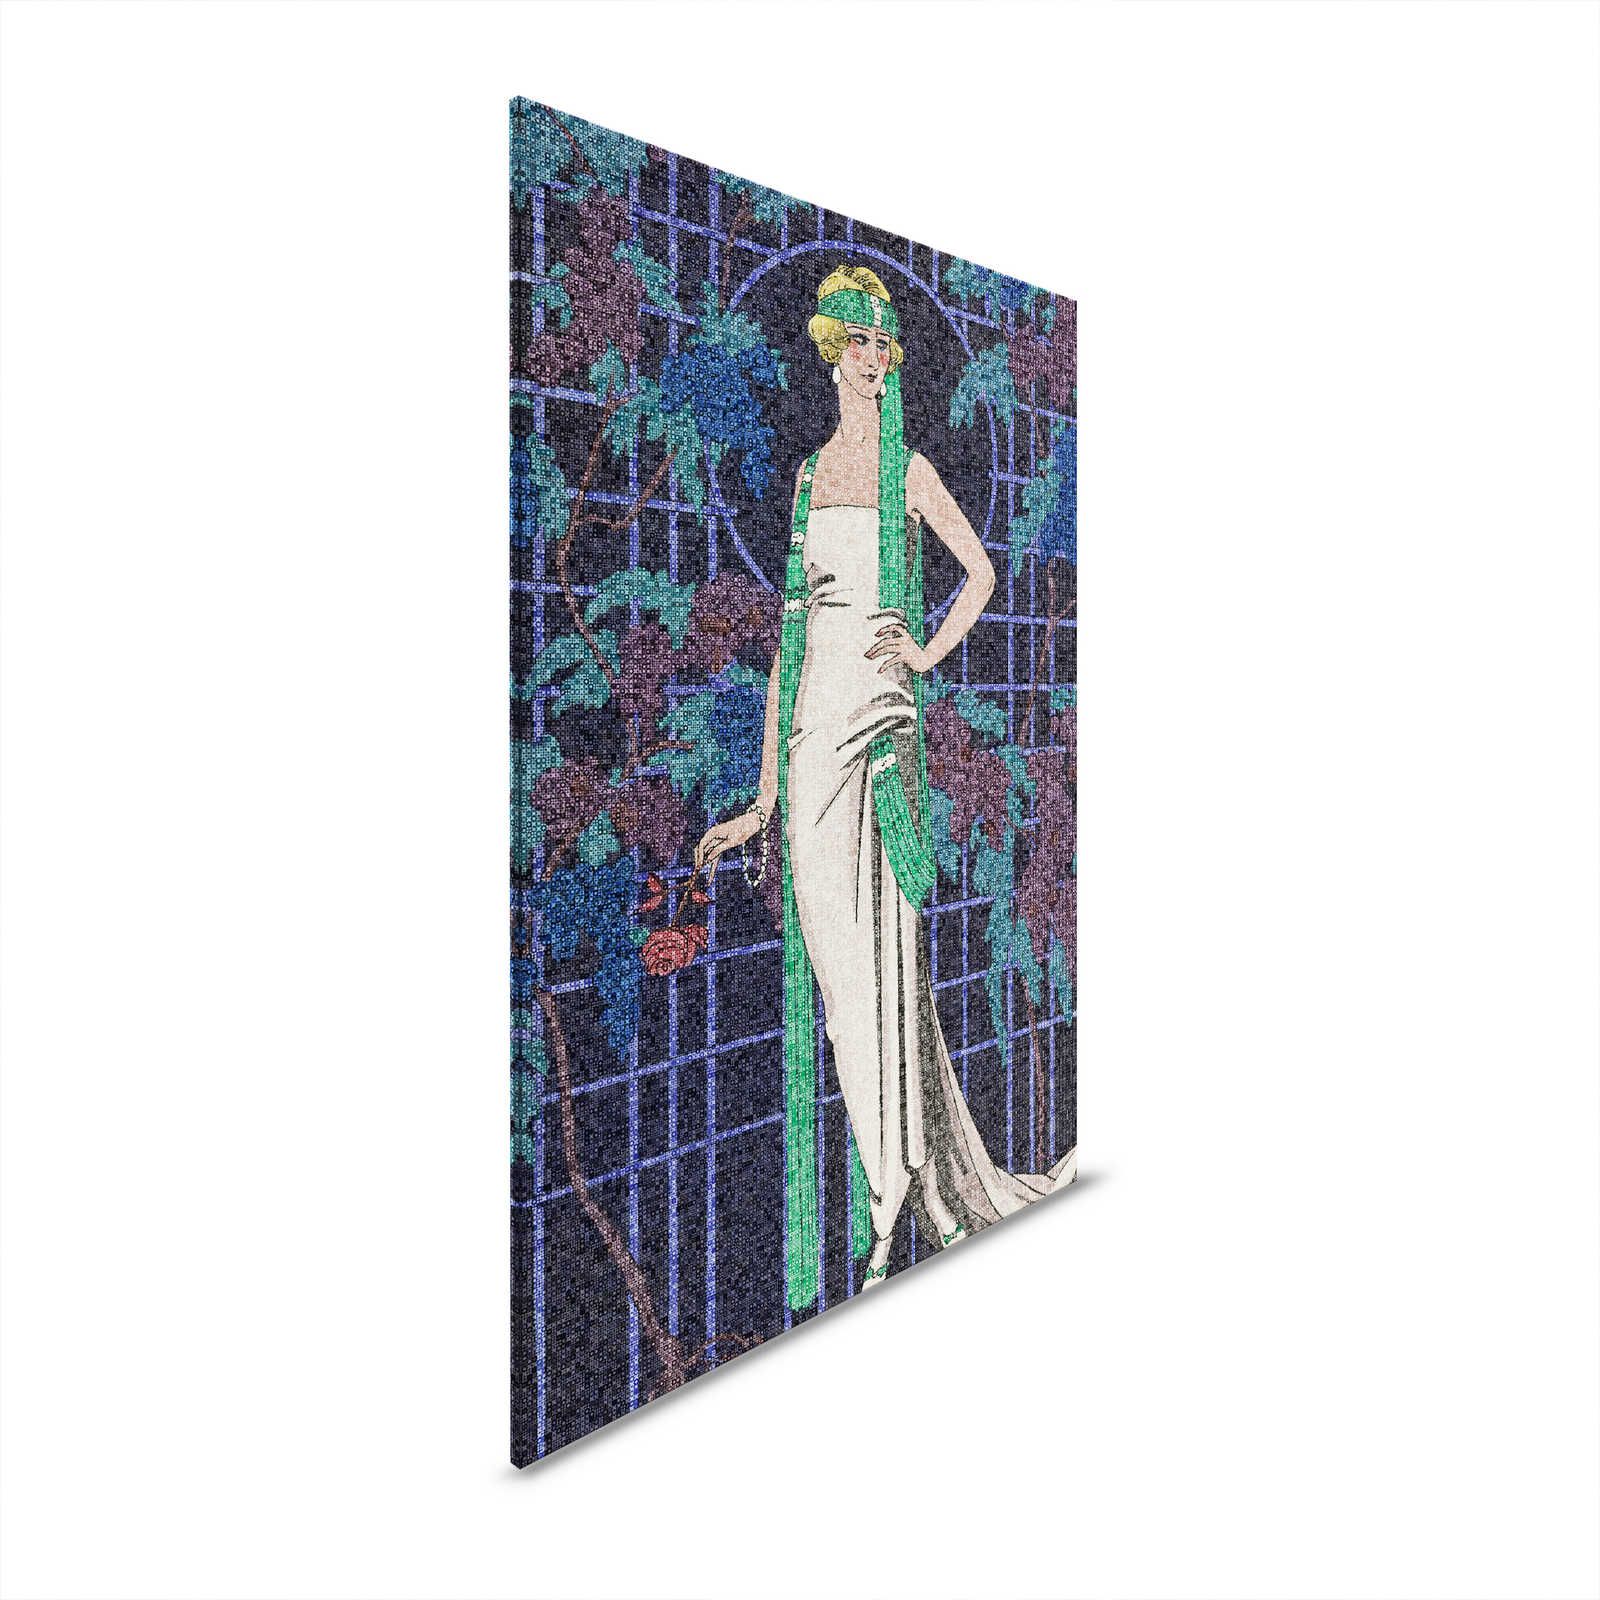 Scala 2 - Mozaïek Canvas Schilderij Art Deco Vrouwen Motief jaren 20 Stijl - 0.80 m x 1.20 m
